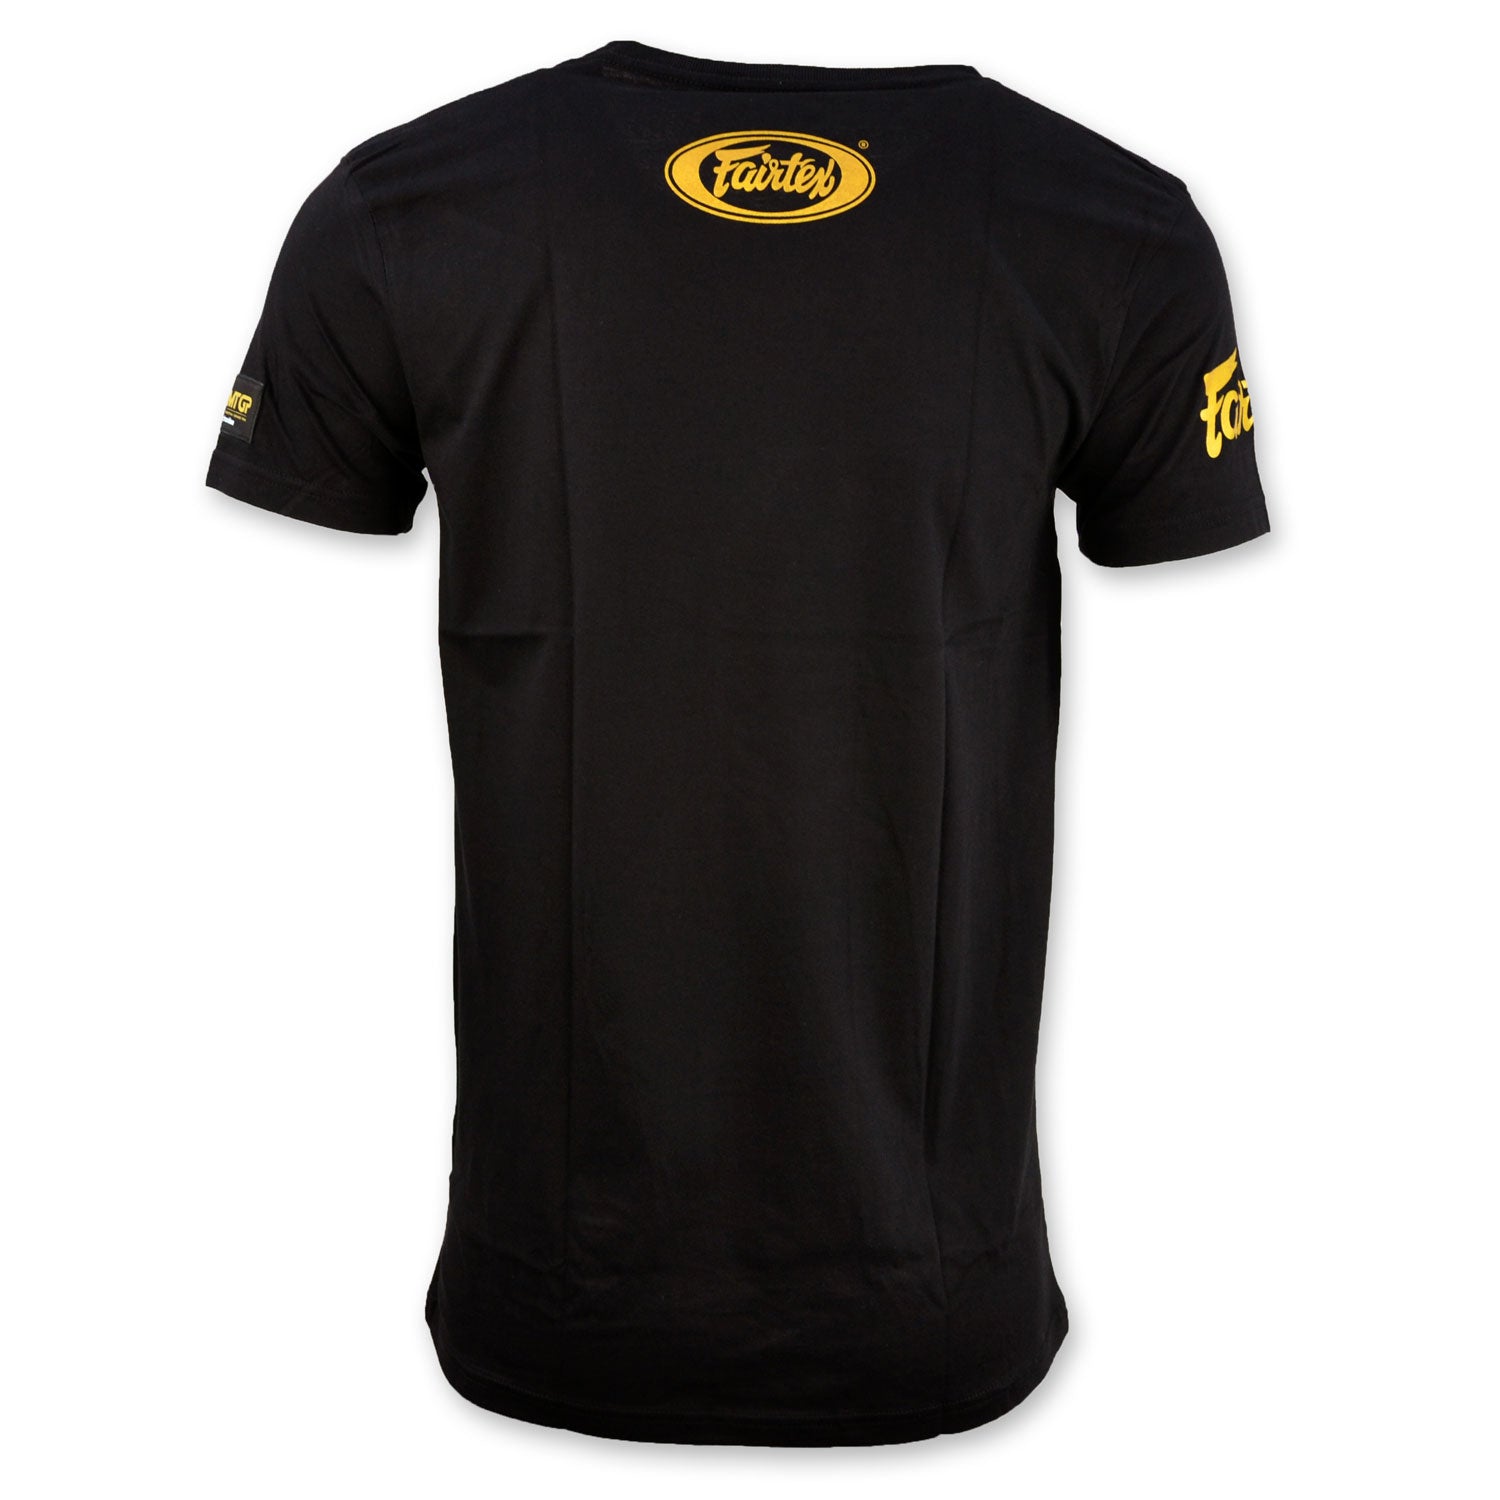 TS Fairtex X MTGP Black-Gold Official T-Shirt